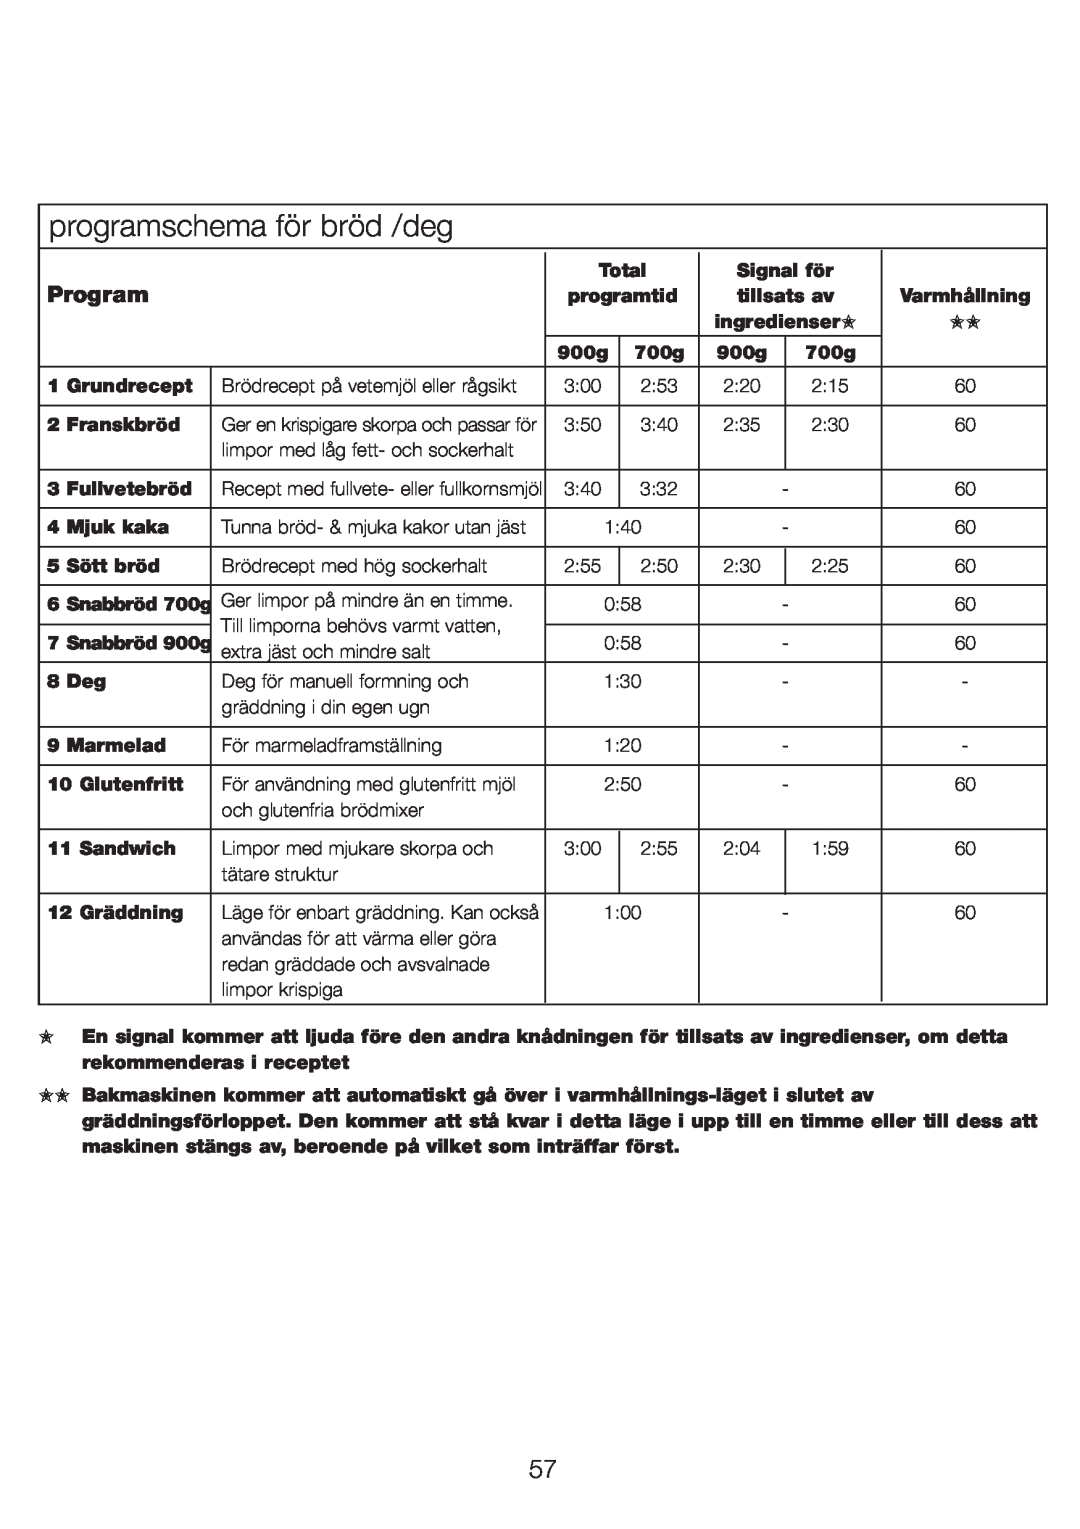 Kenwood BM210 manual programschema för bröd /deg, Program 